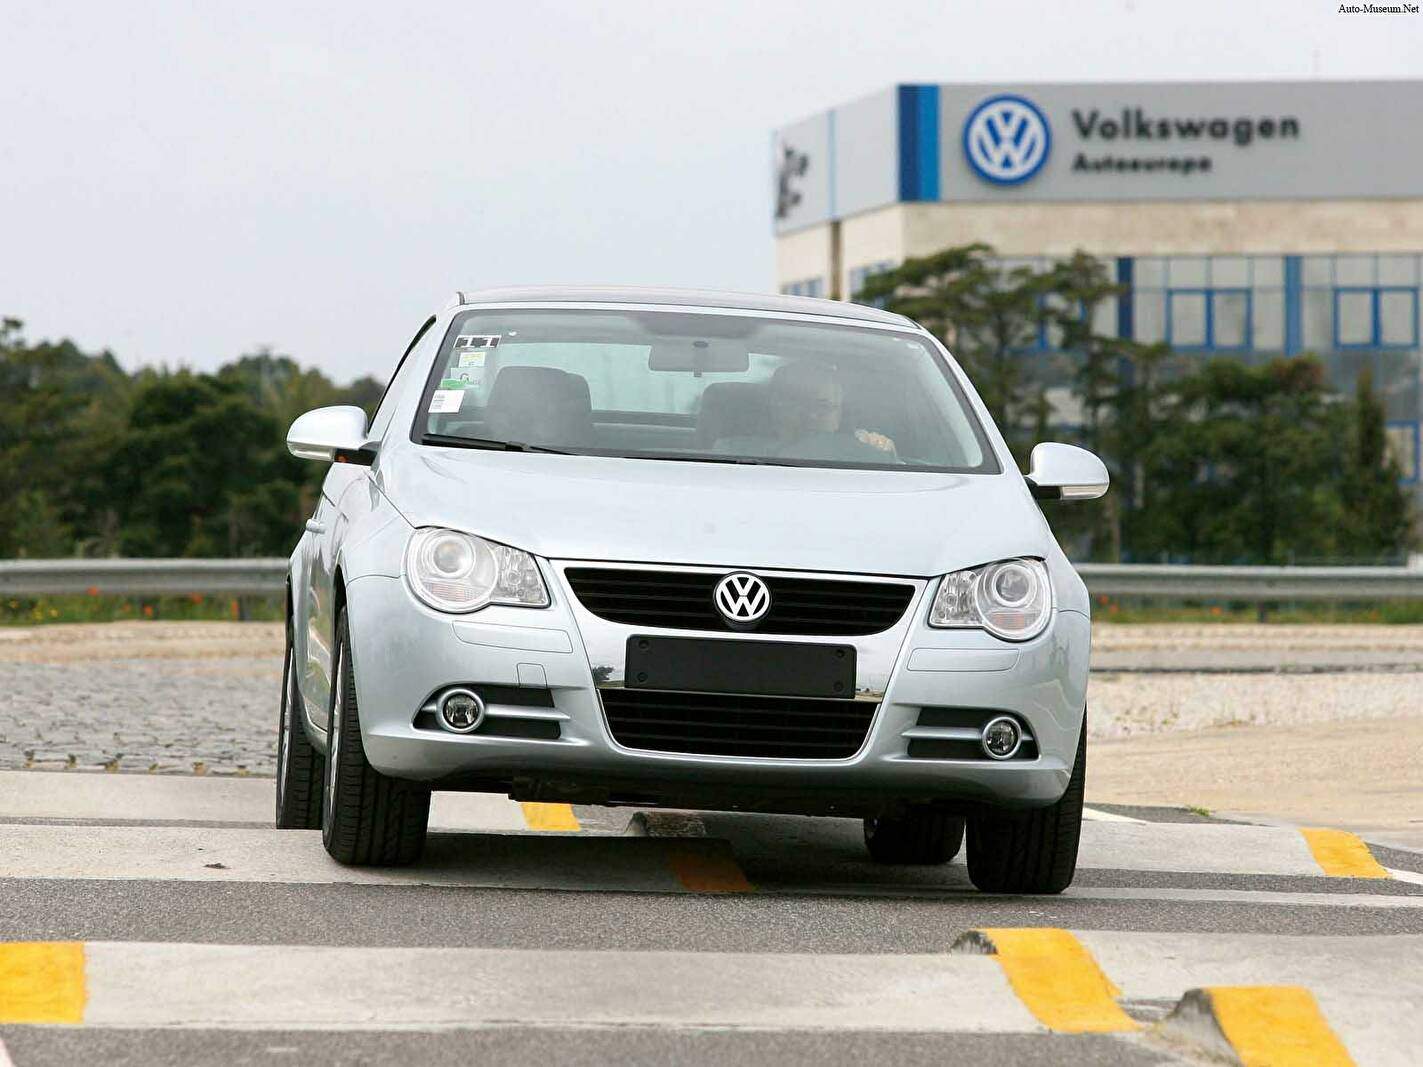 Volkswagen Eos 2.0 TFSI 200 (2006-2009),  ajouté par lioenzo